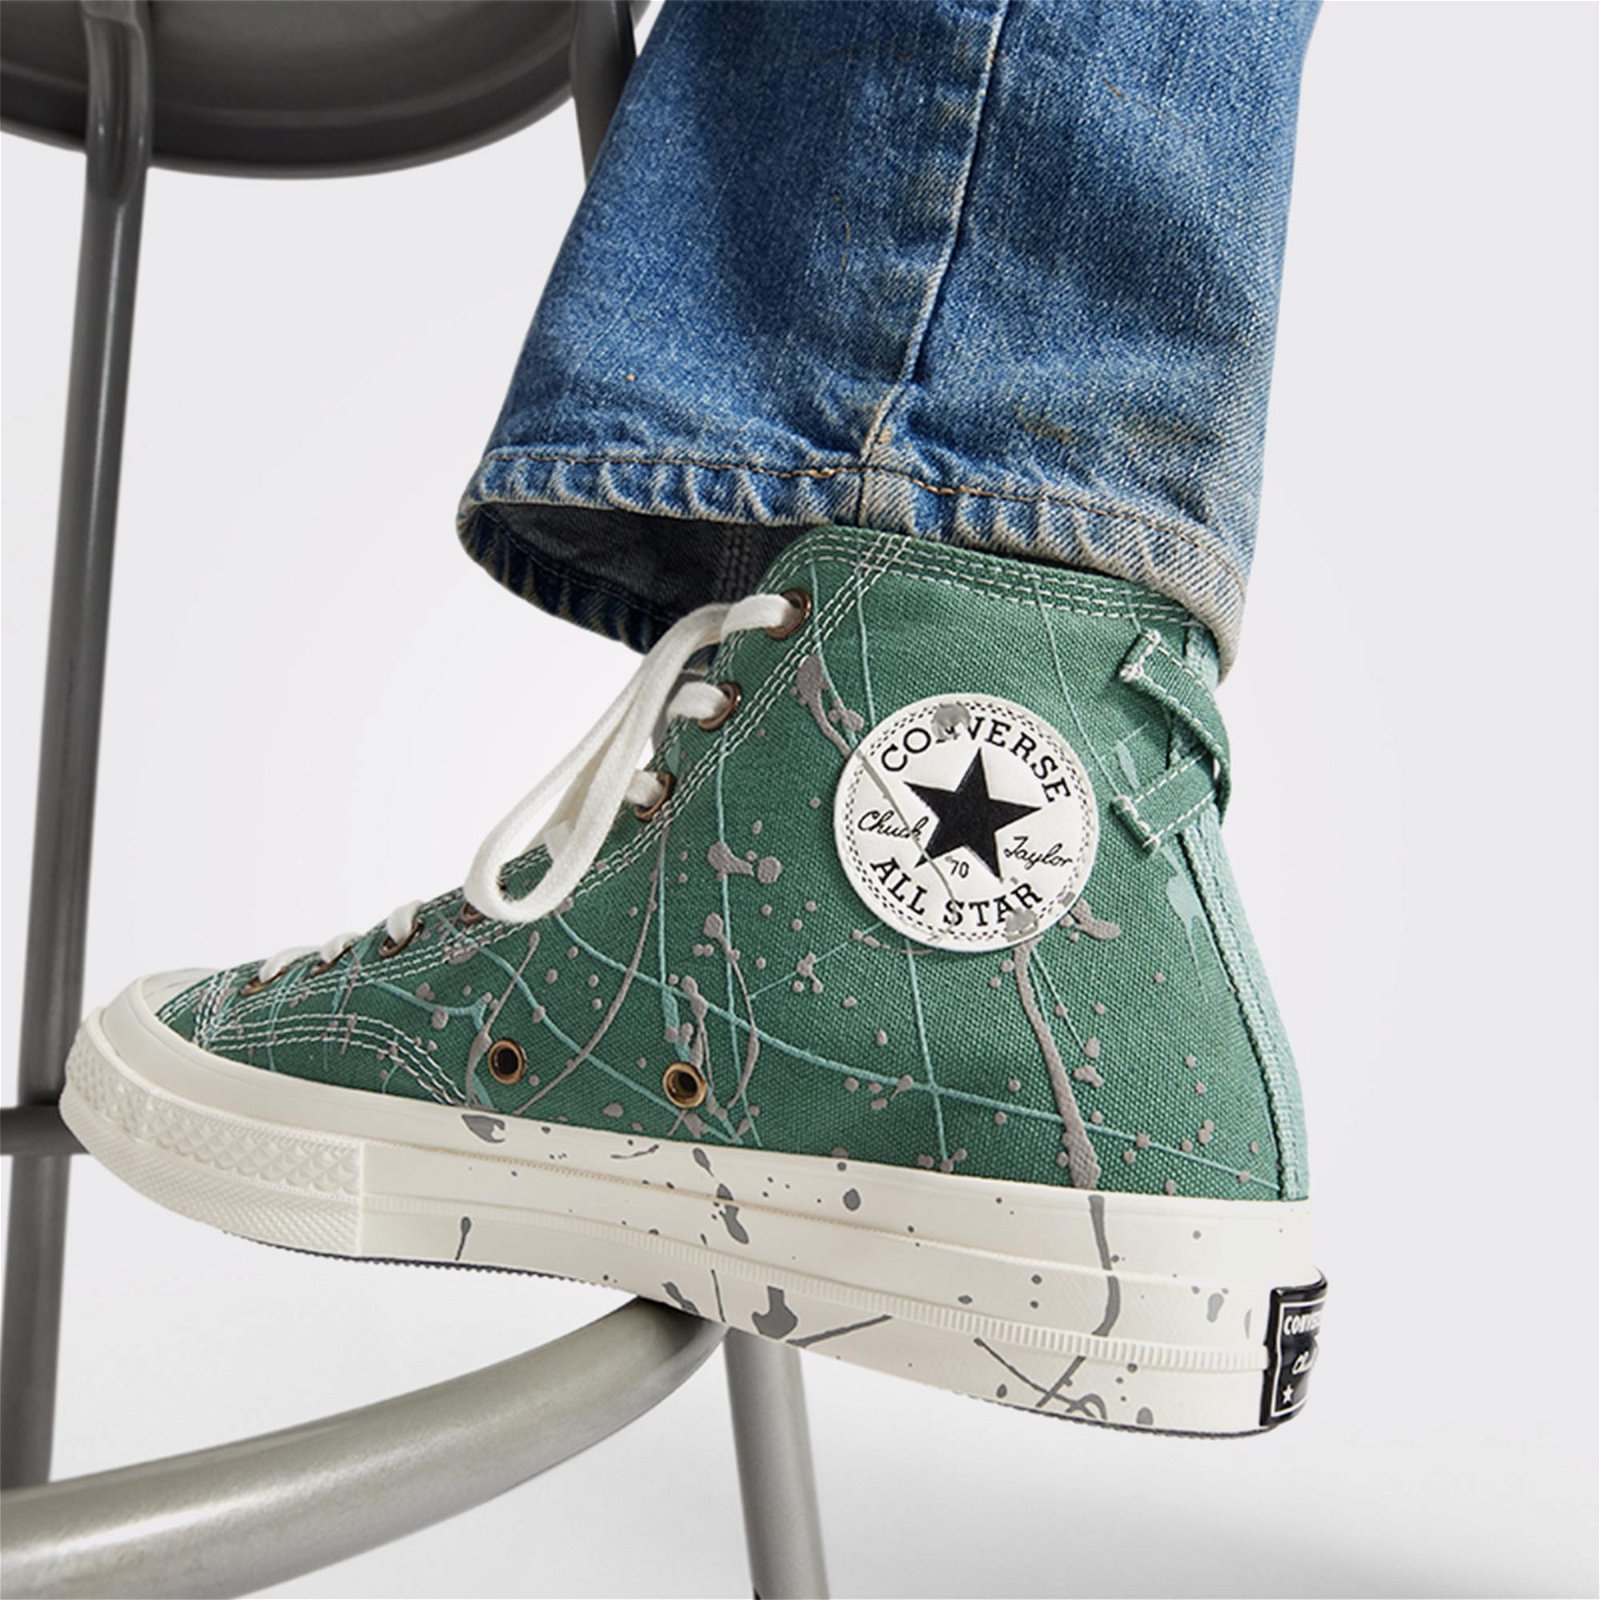 Converse Chuck 70 Paint Splatter Kadın Yeşil Sneaker